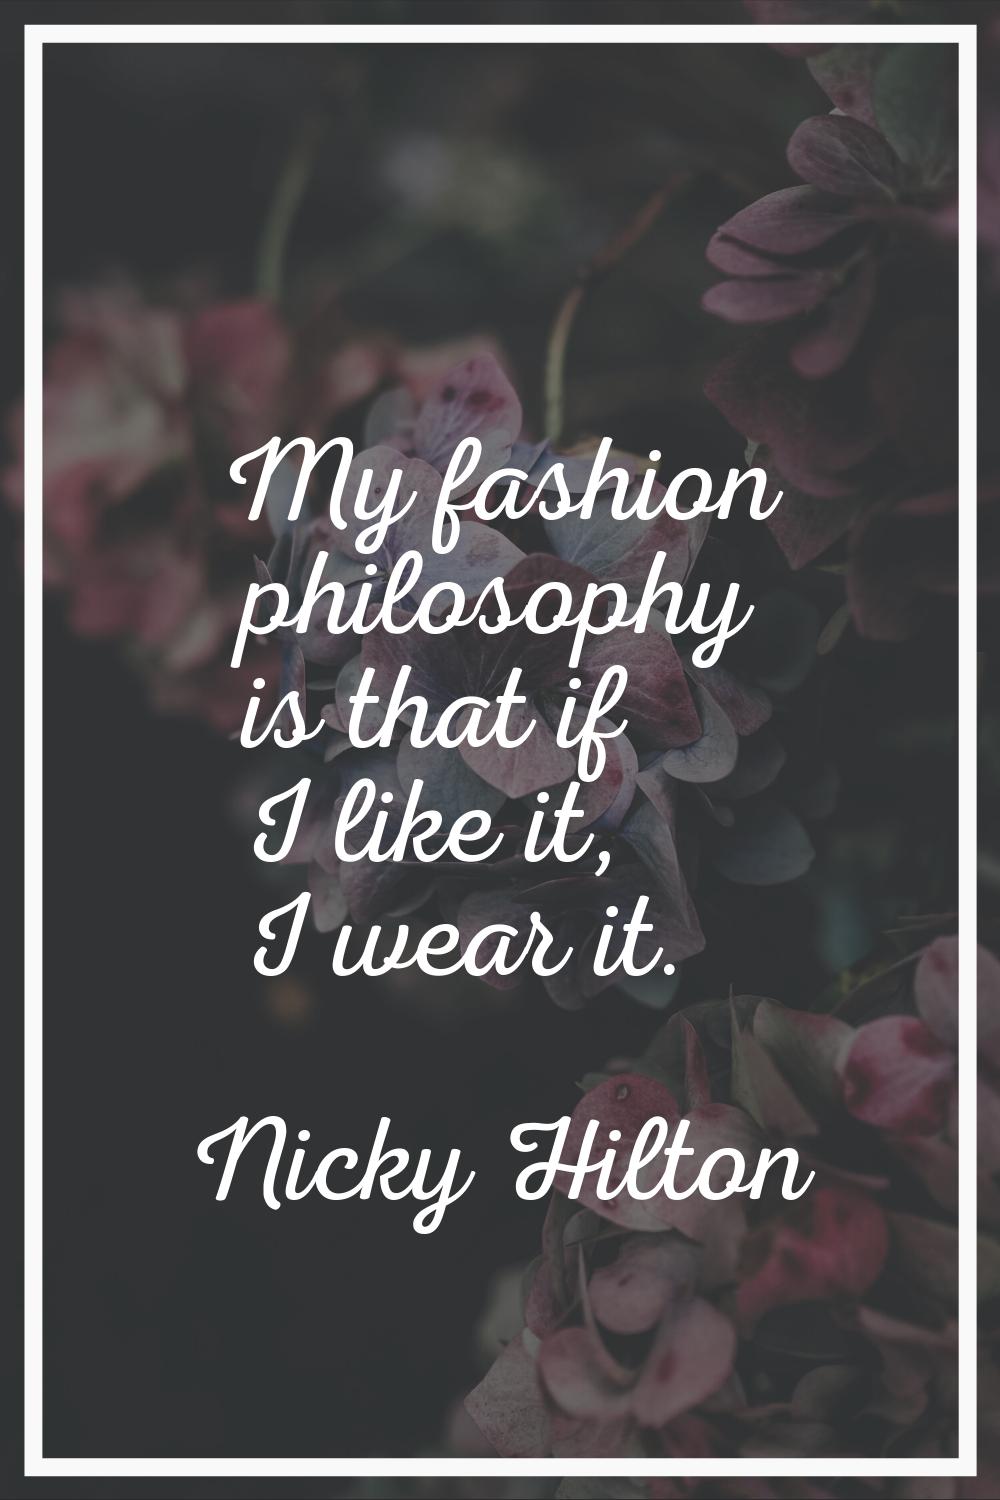 My fashion philosophy is that if I like it, I wear it.